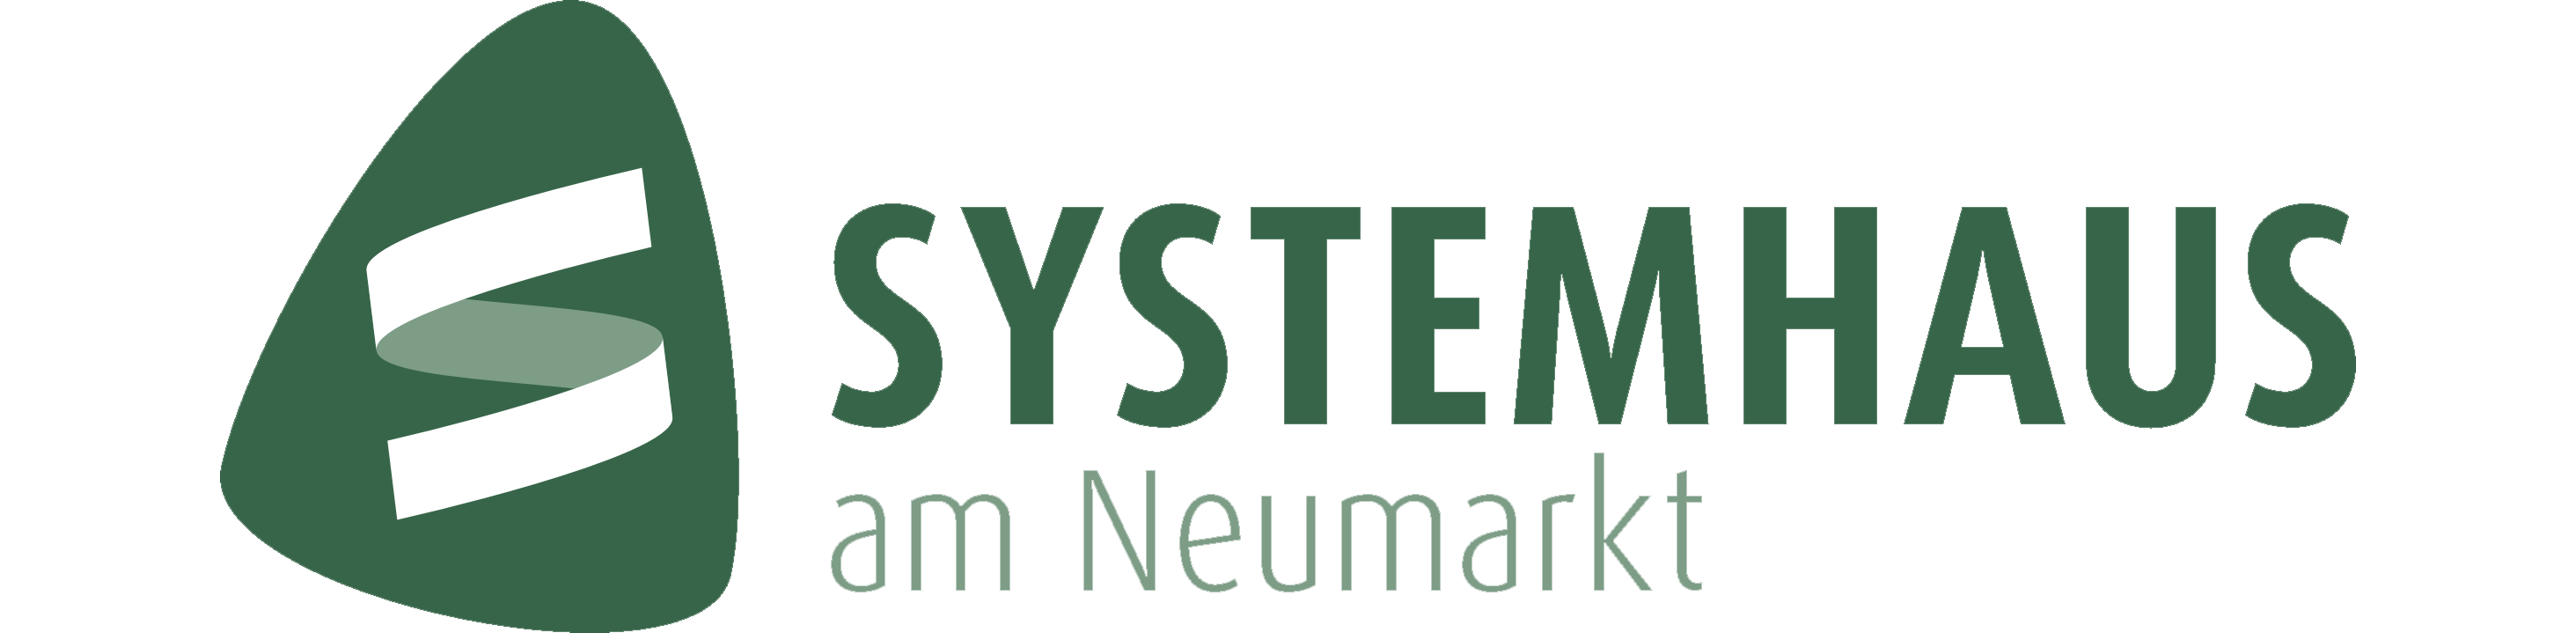 Systemhaus am Neumarkt EDV-Service GmbH